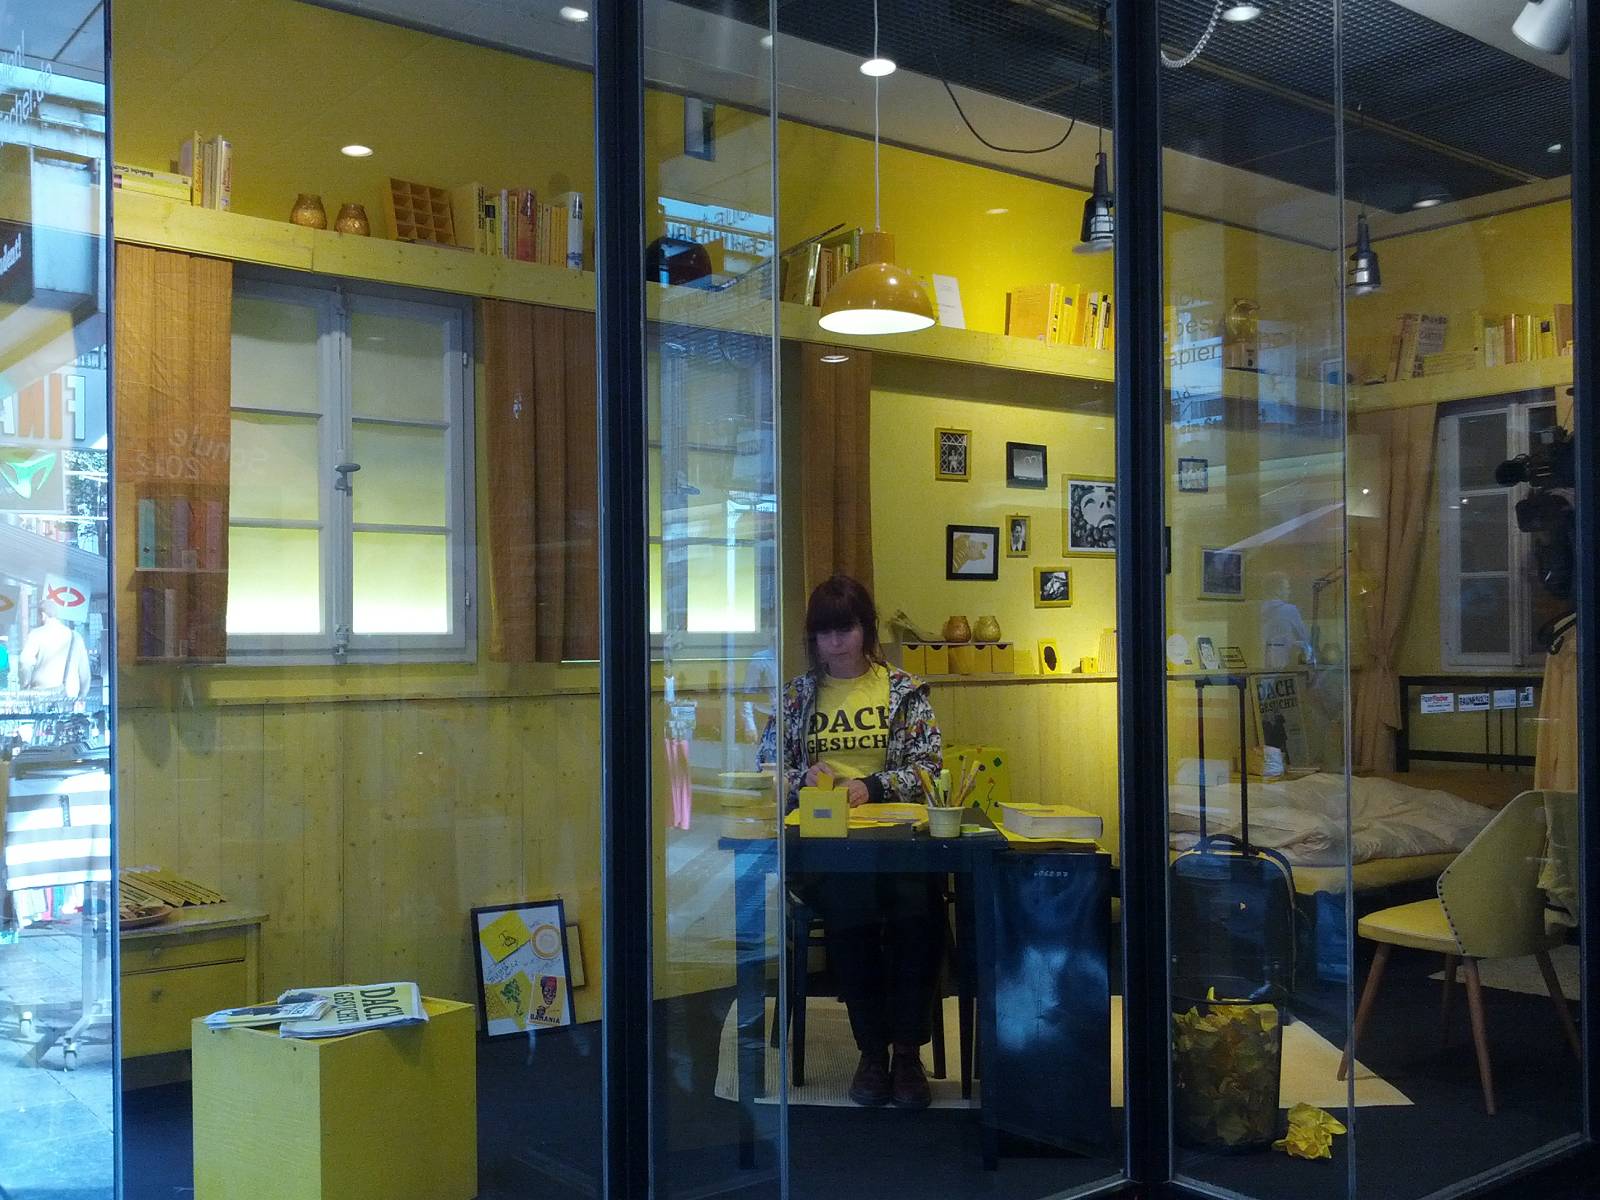 Studentin sitzt an einem Schreibtisch eines volleingerichteten Zimmers, das in einem Schaufenster steht